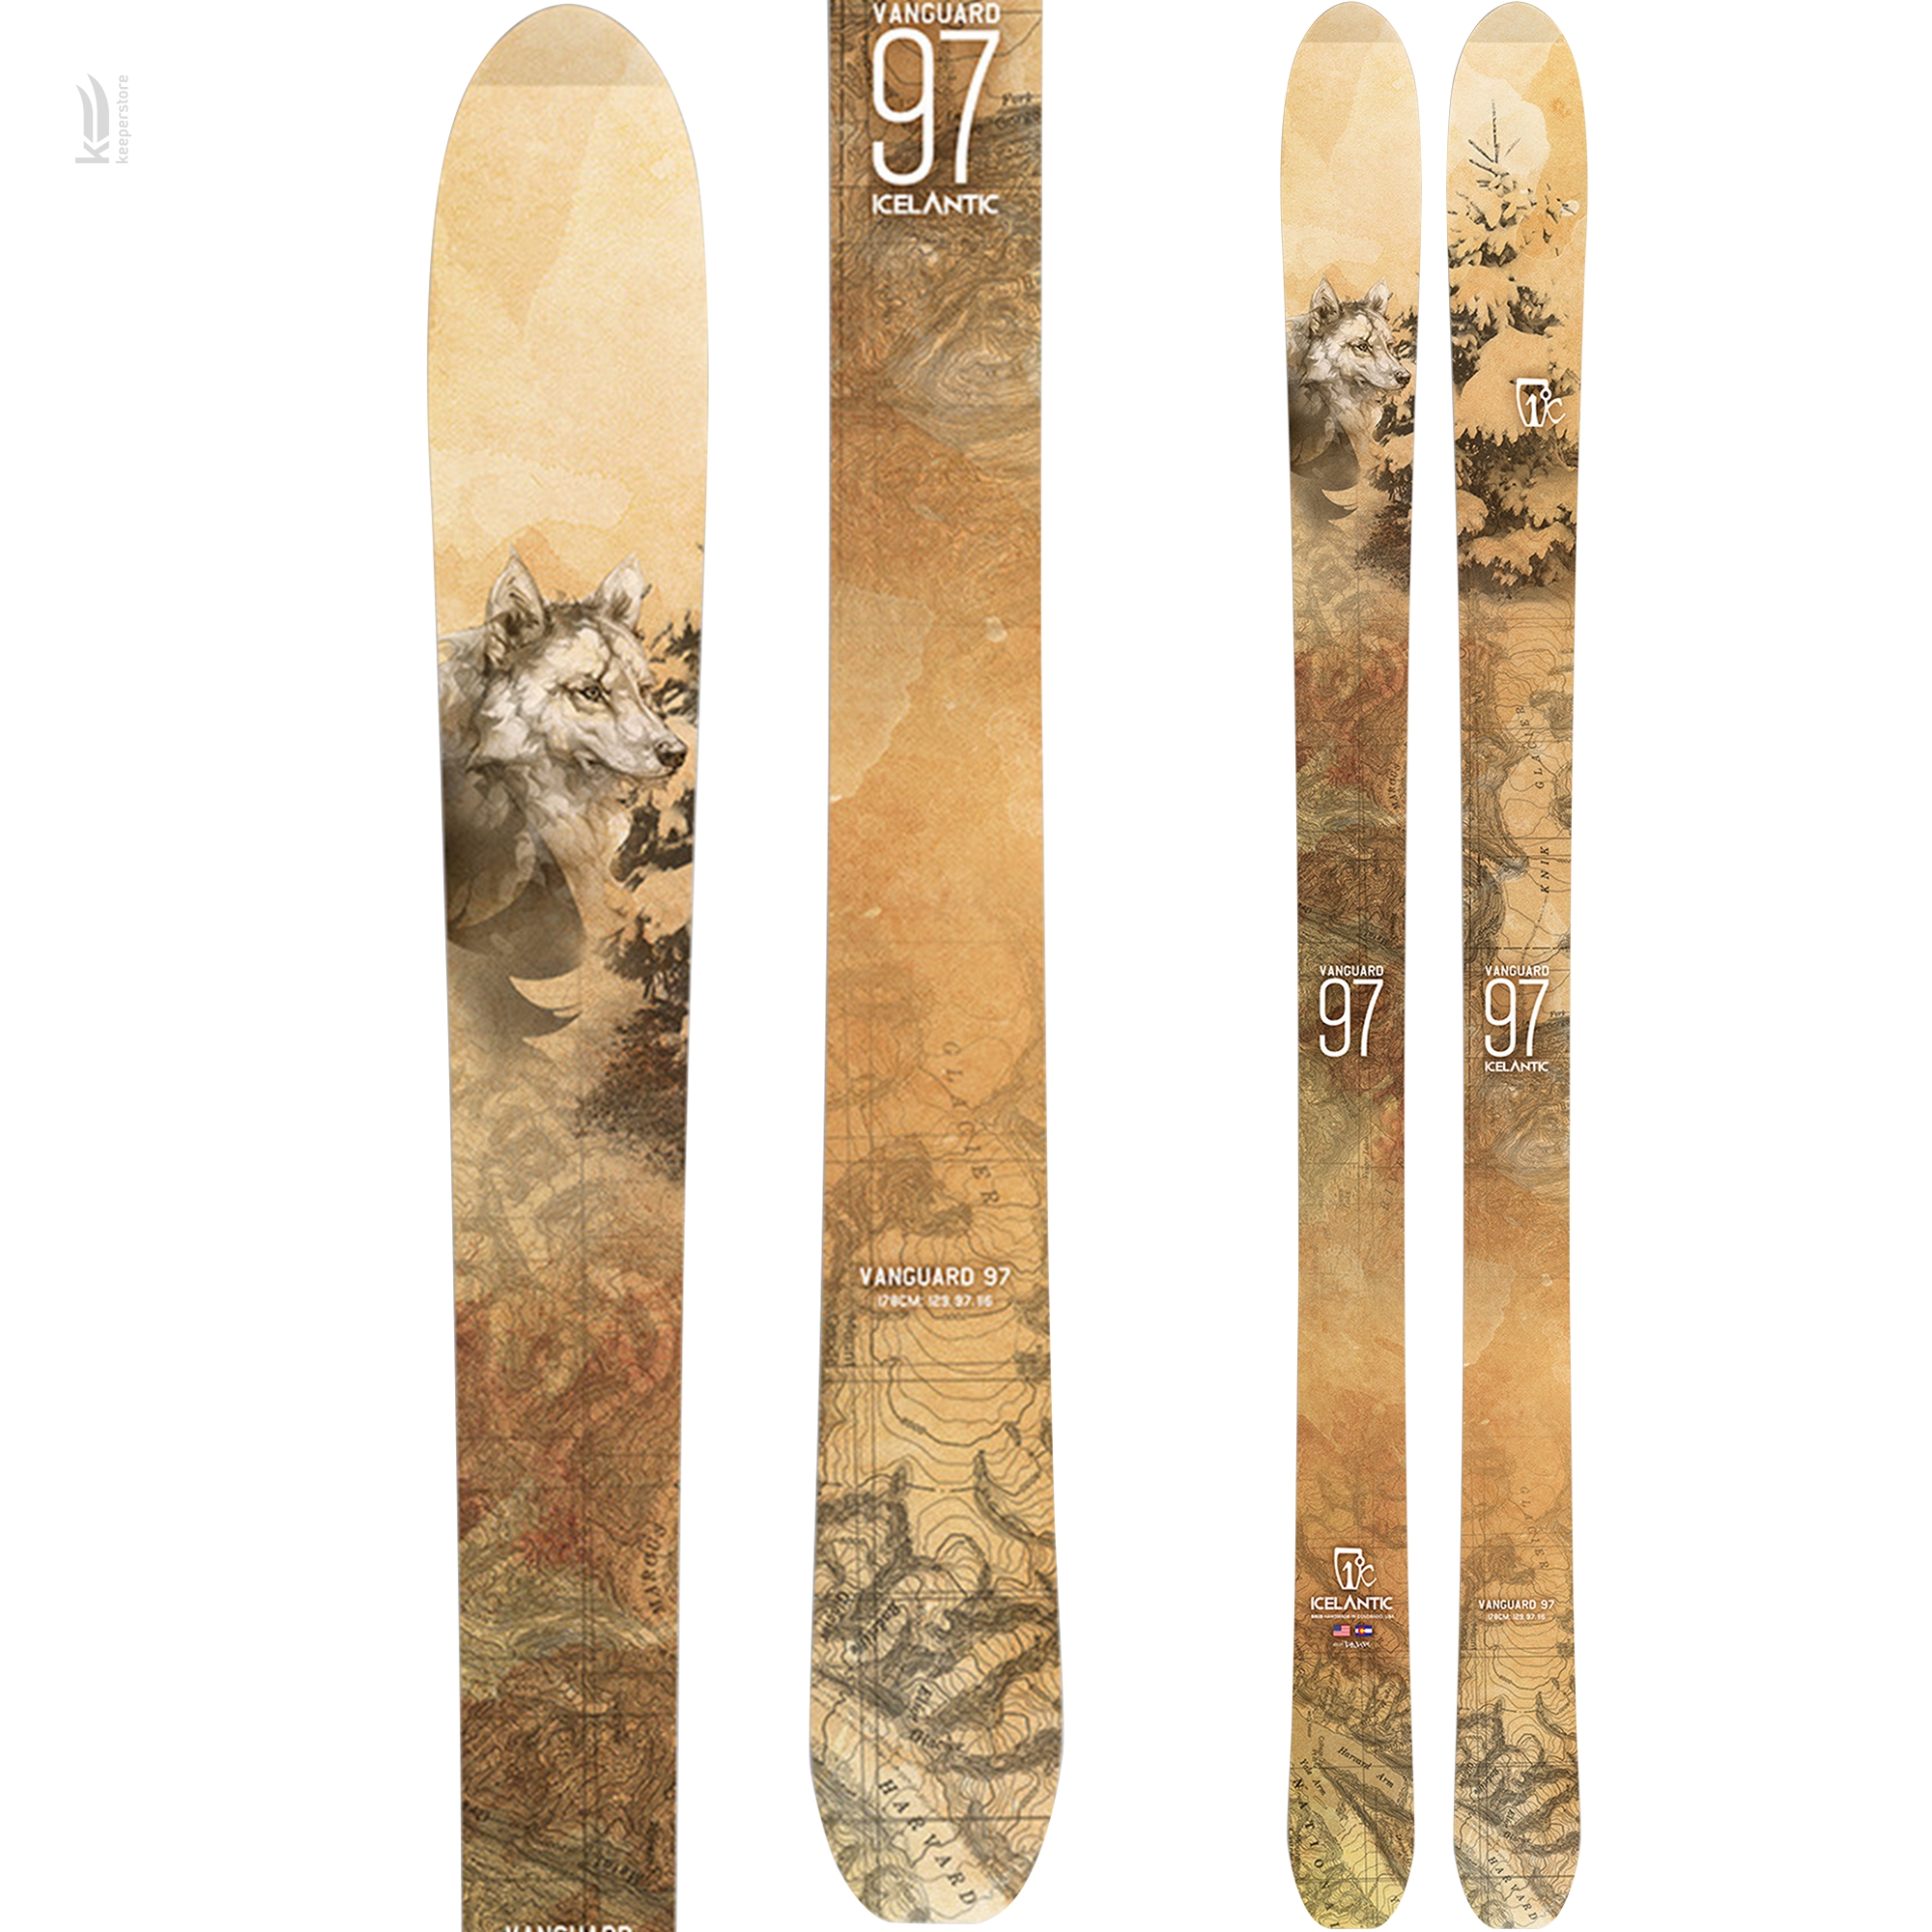 Горные лыжи Icelantic Vanguard 97 2016/2017 178cm